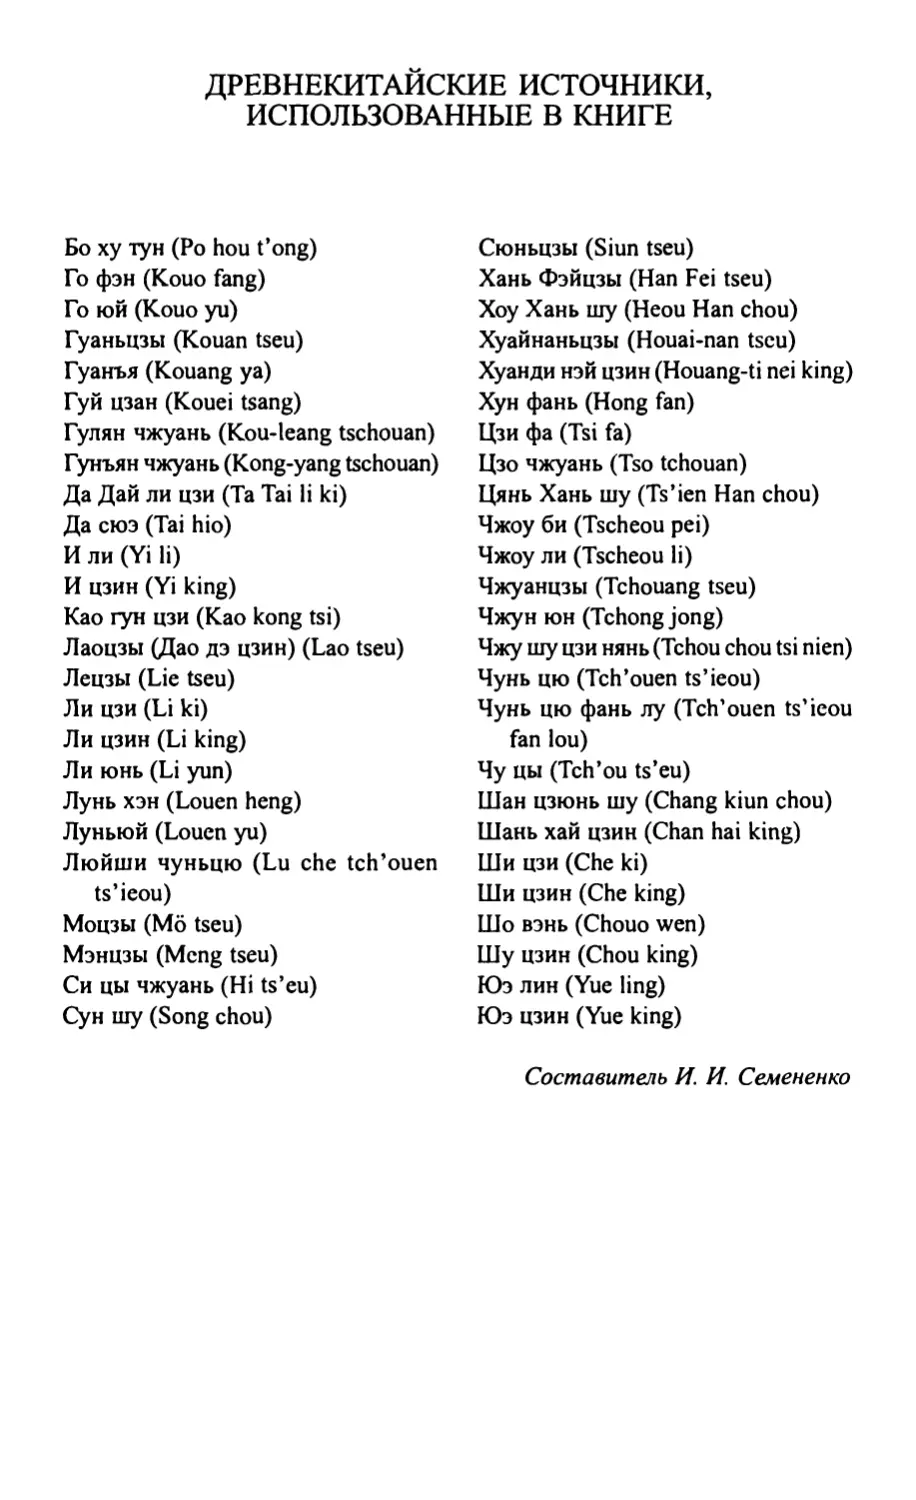 Древнекитайские источники, использованные в книге